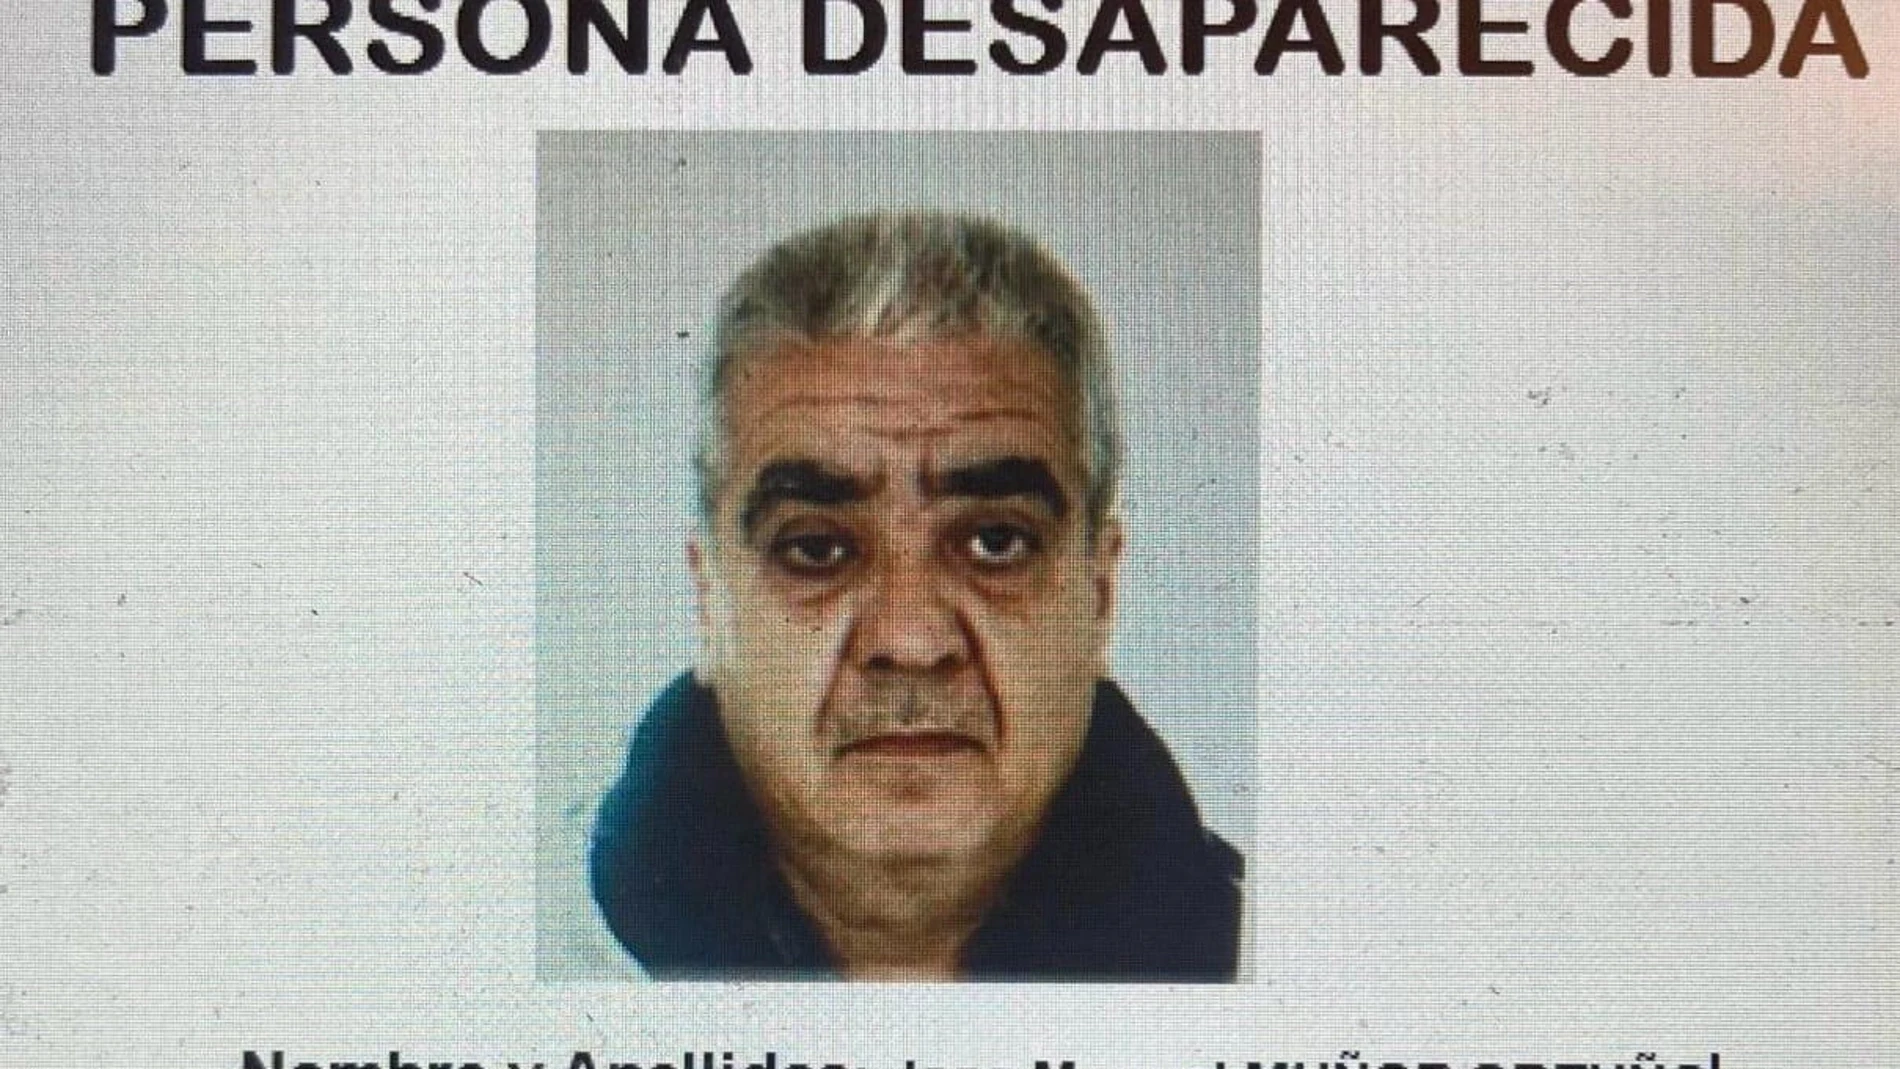 MURCIA.-Policía Nacional difunde la foto del hombre desaparecido en Alcantarilla y pide la colaboración ciudadana